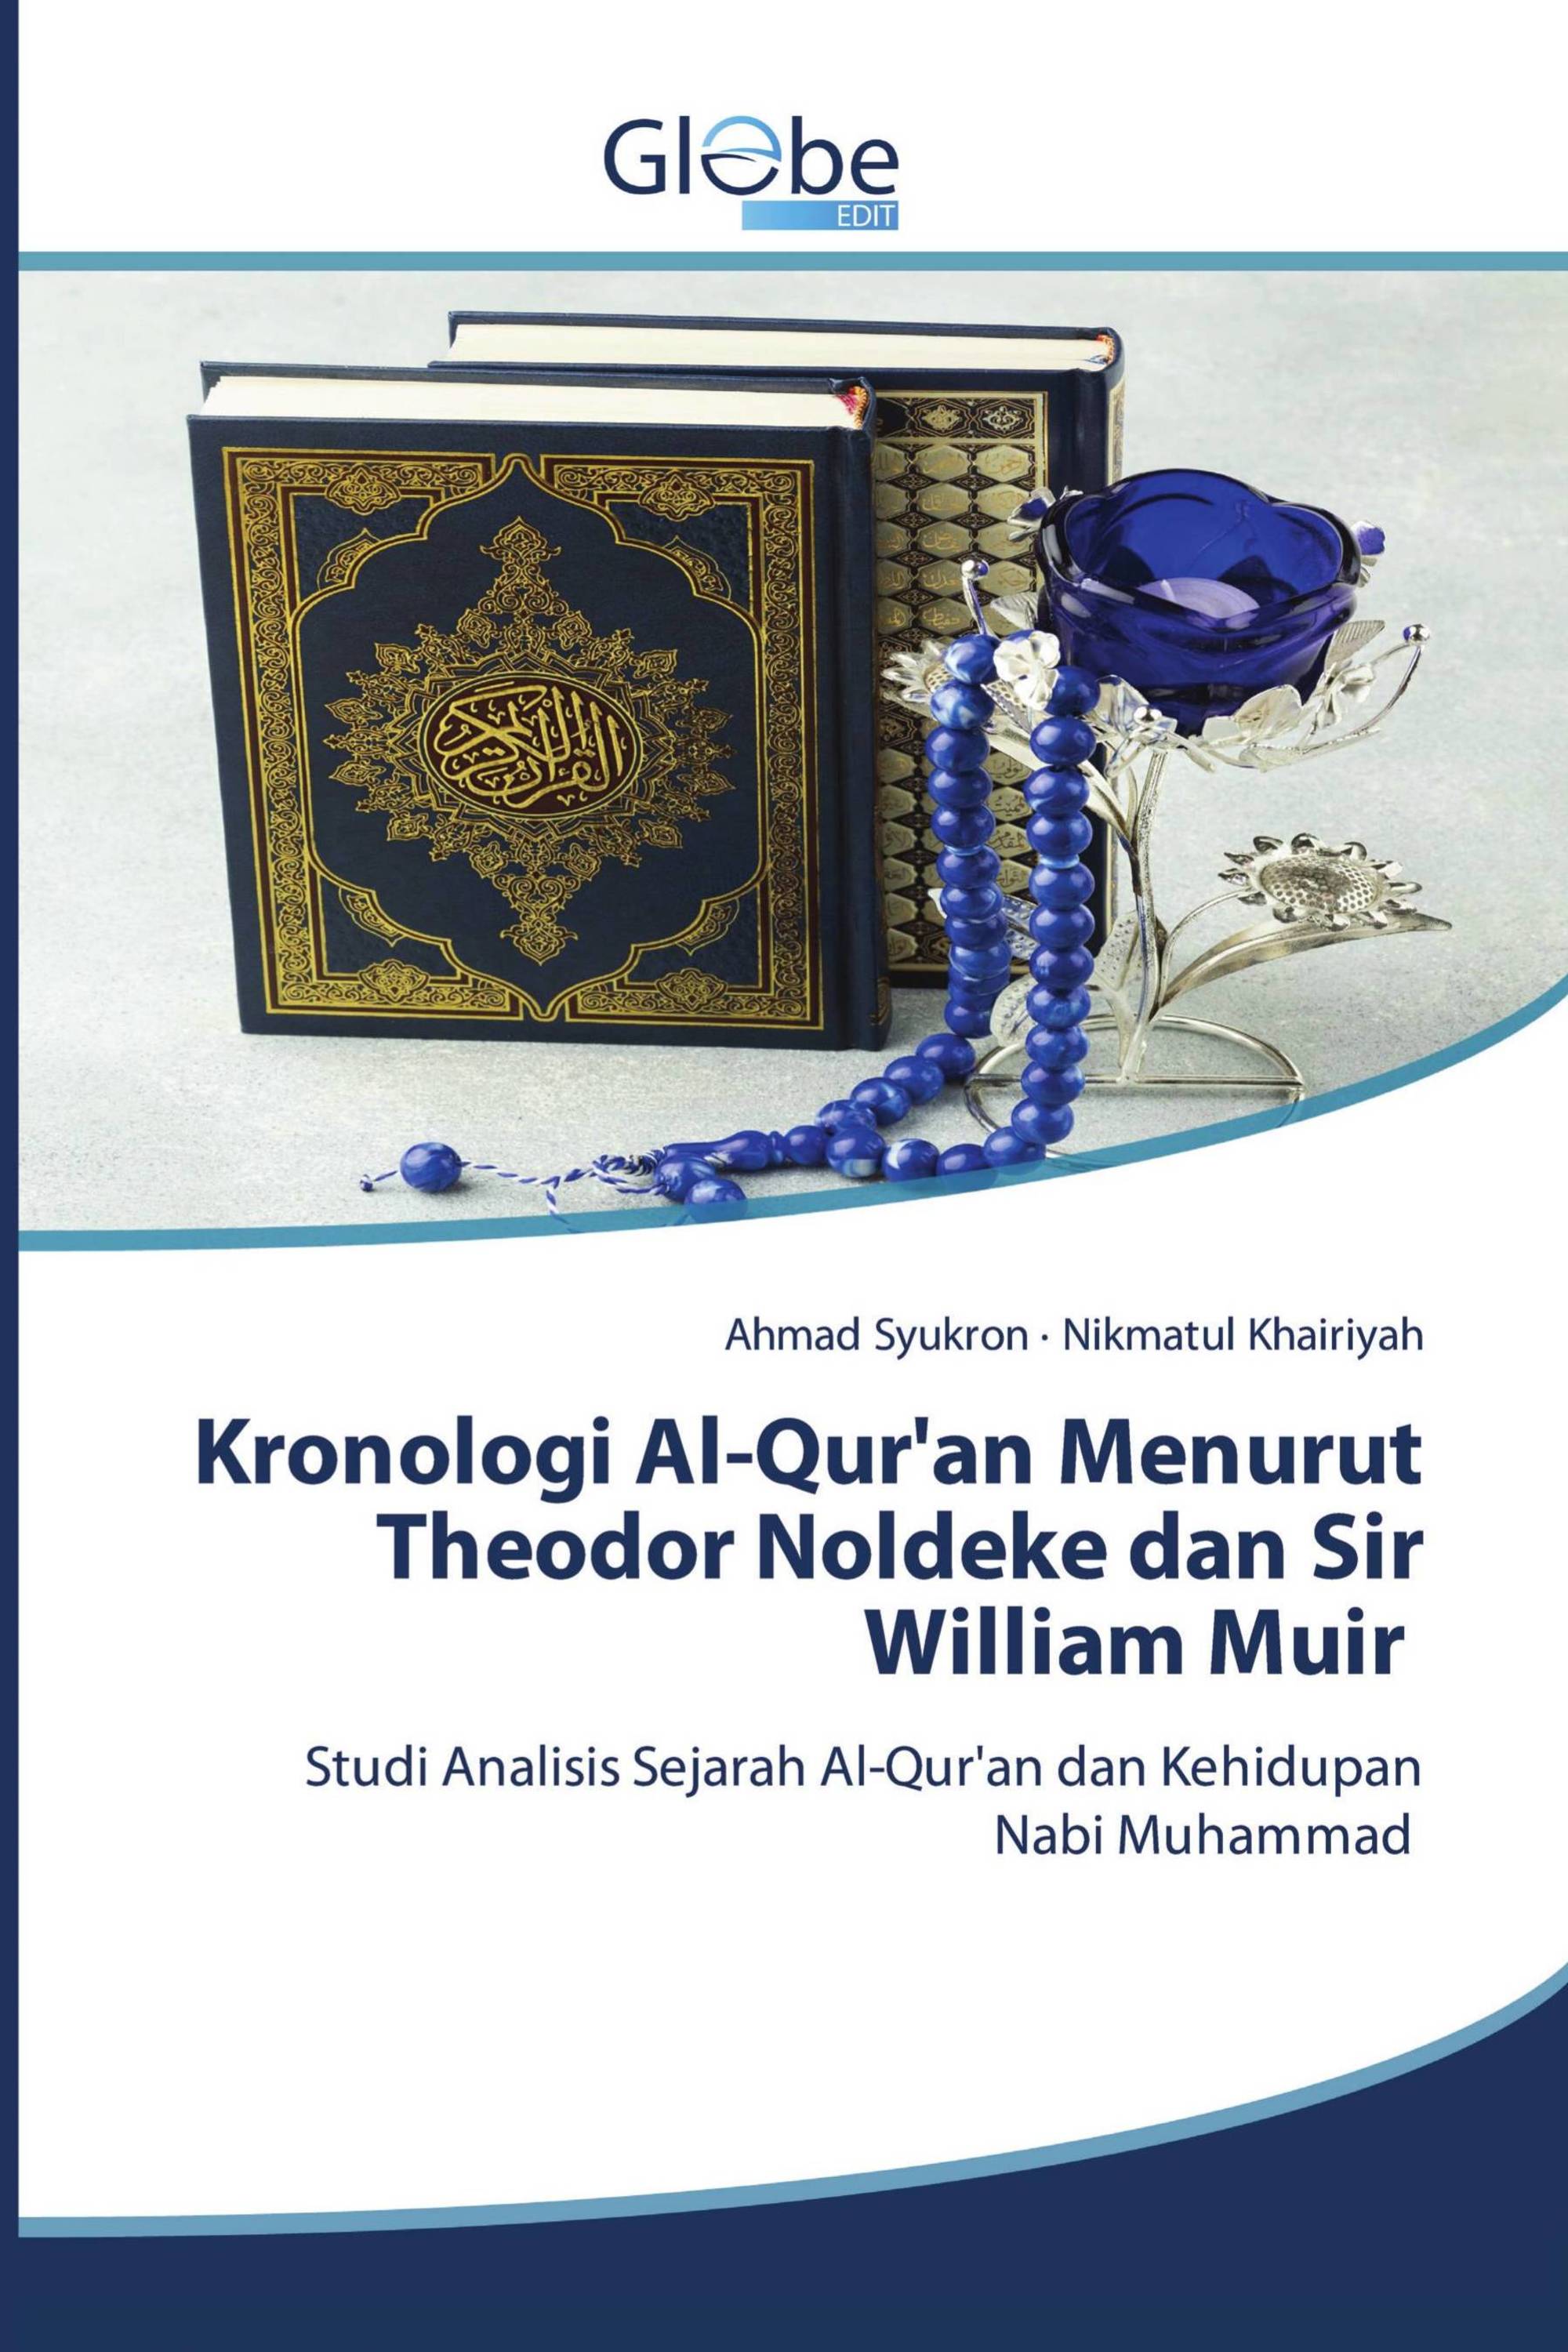 Kronologi Al-Qur'an Menurut Theodor Noldeke dan Sir William Muir